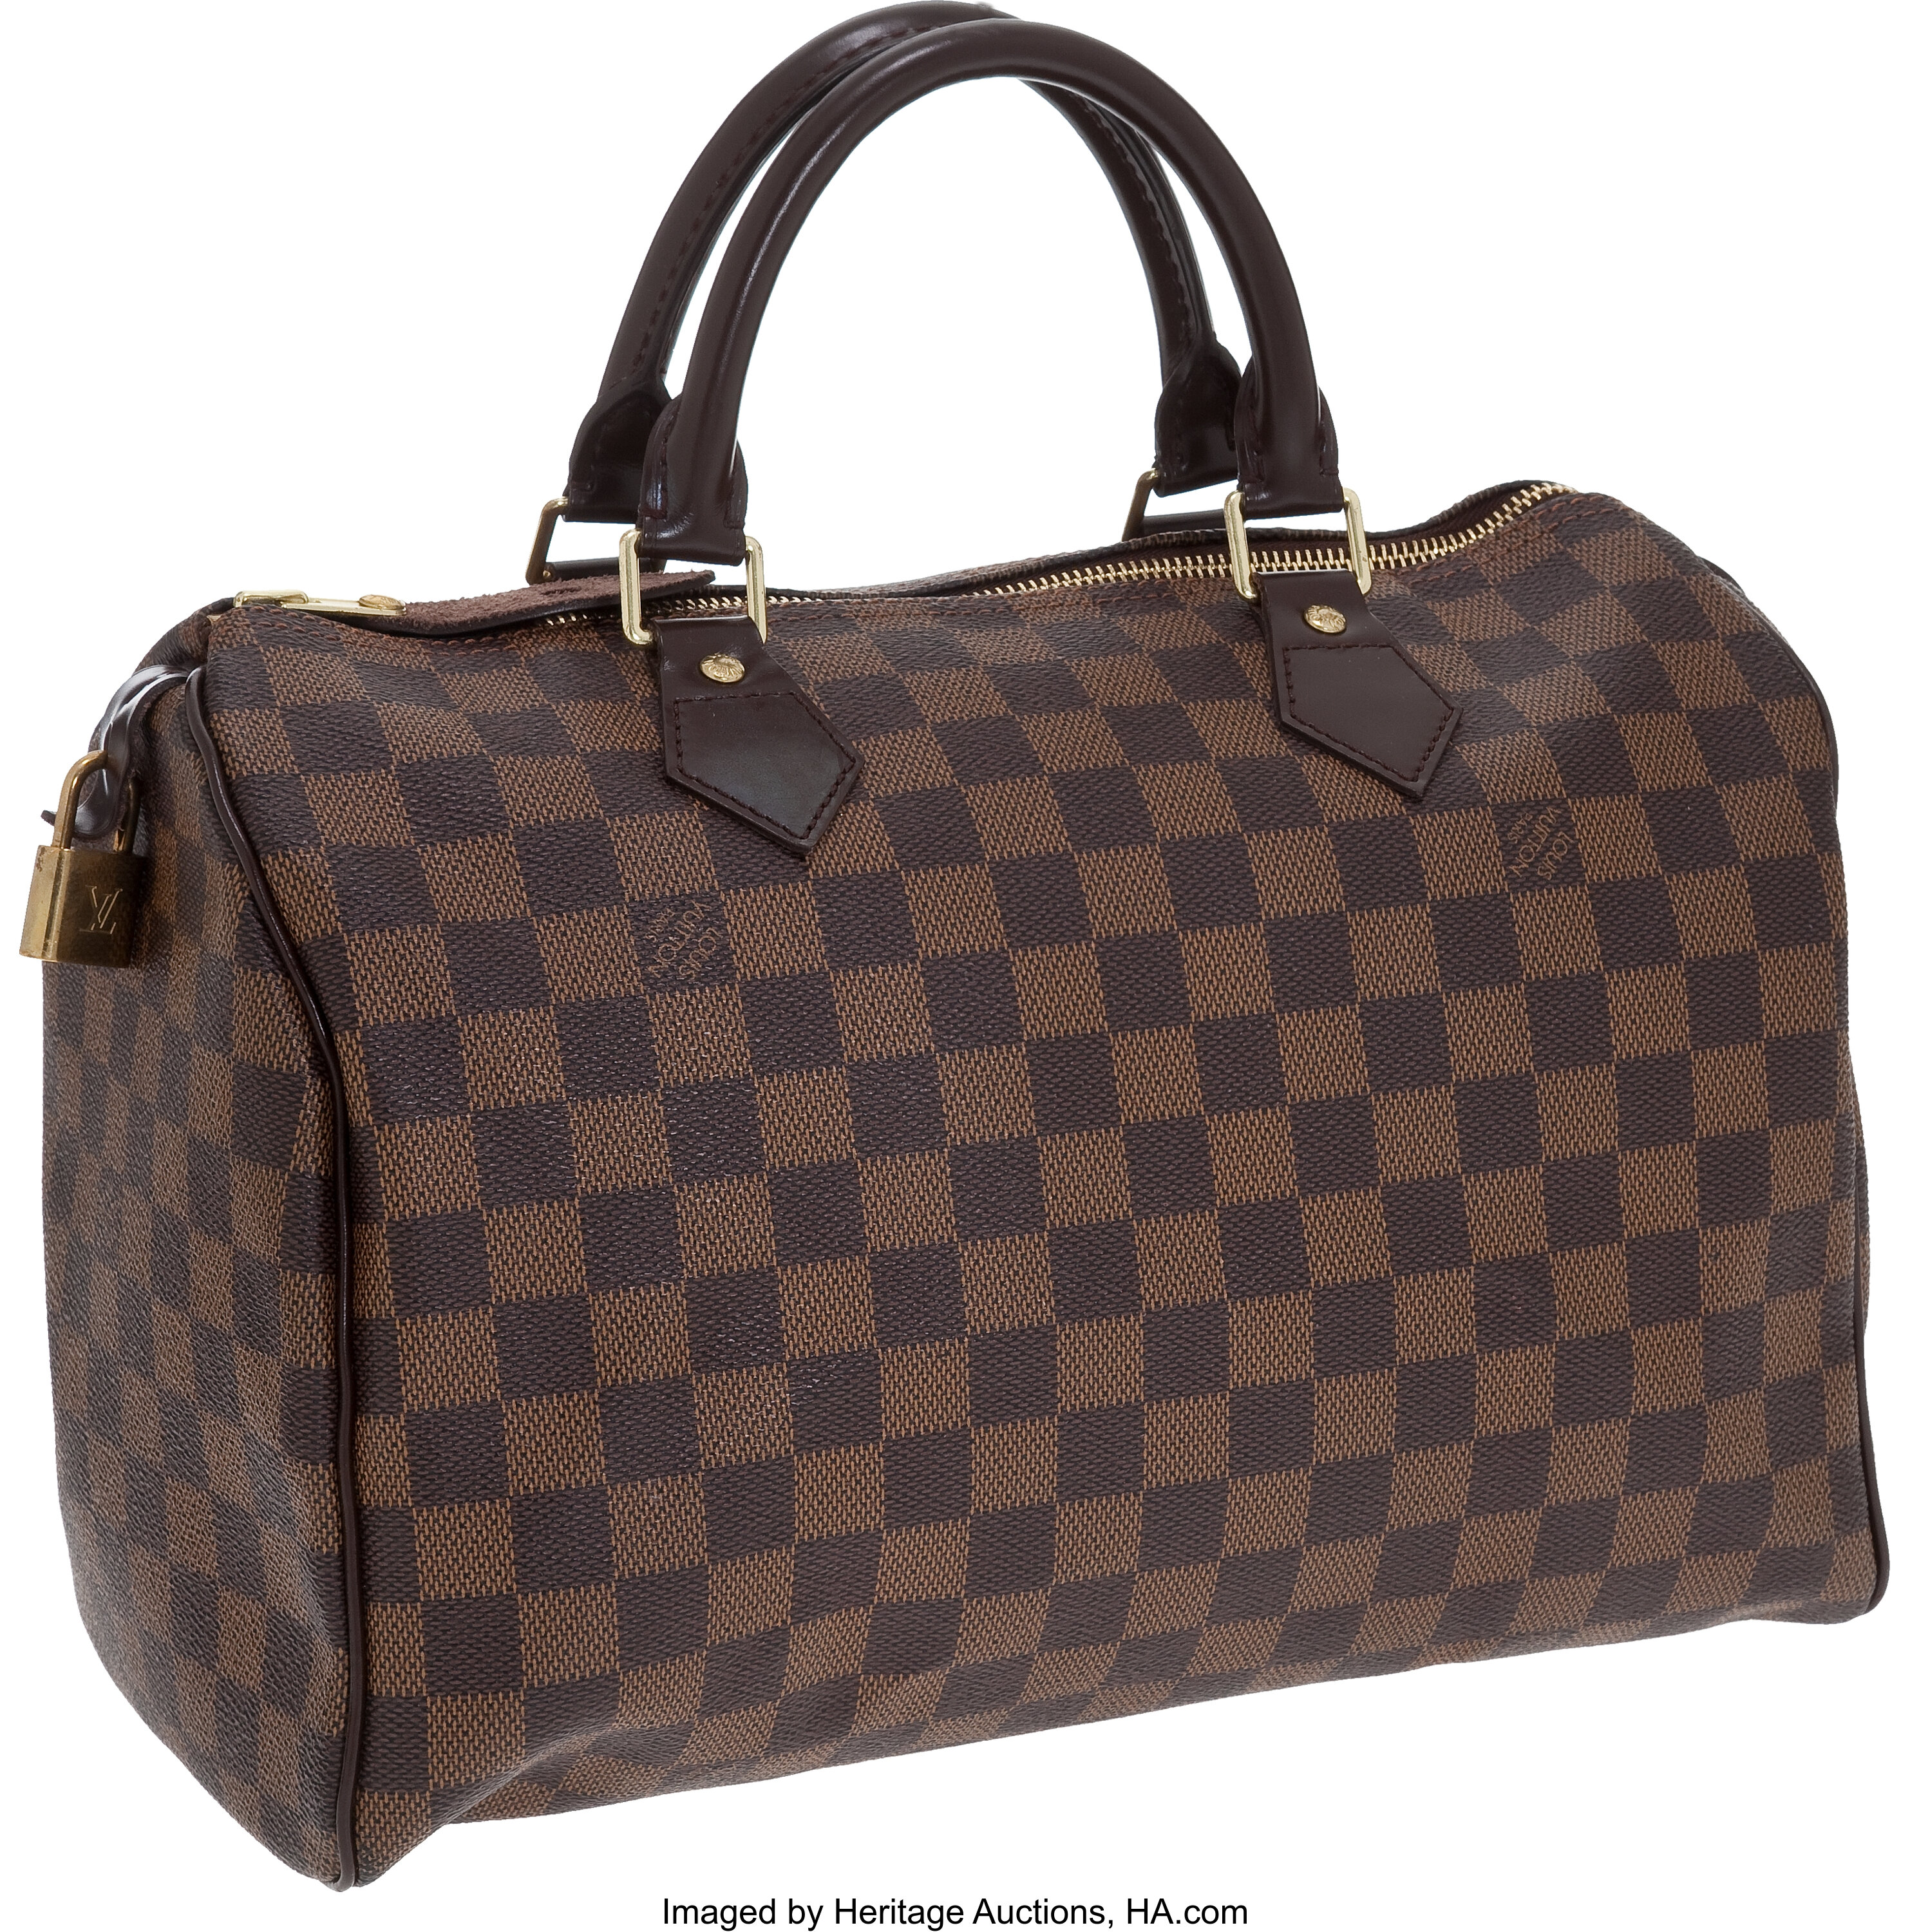 Louis Vuitton Suhali Le Fabuleux Bag - Neutrals Shoulder Bags